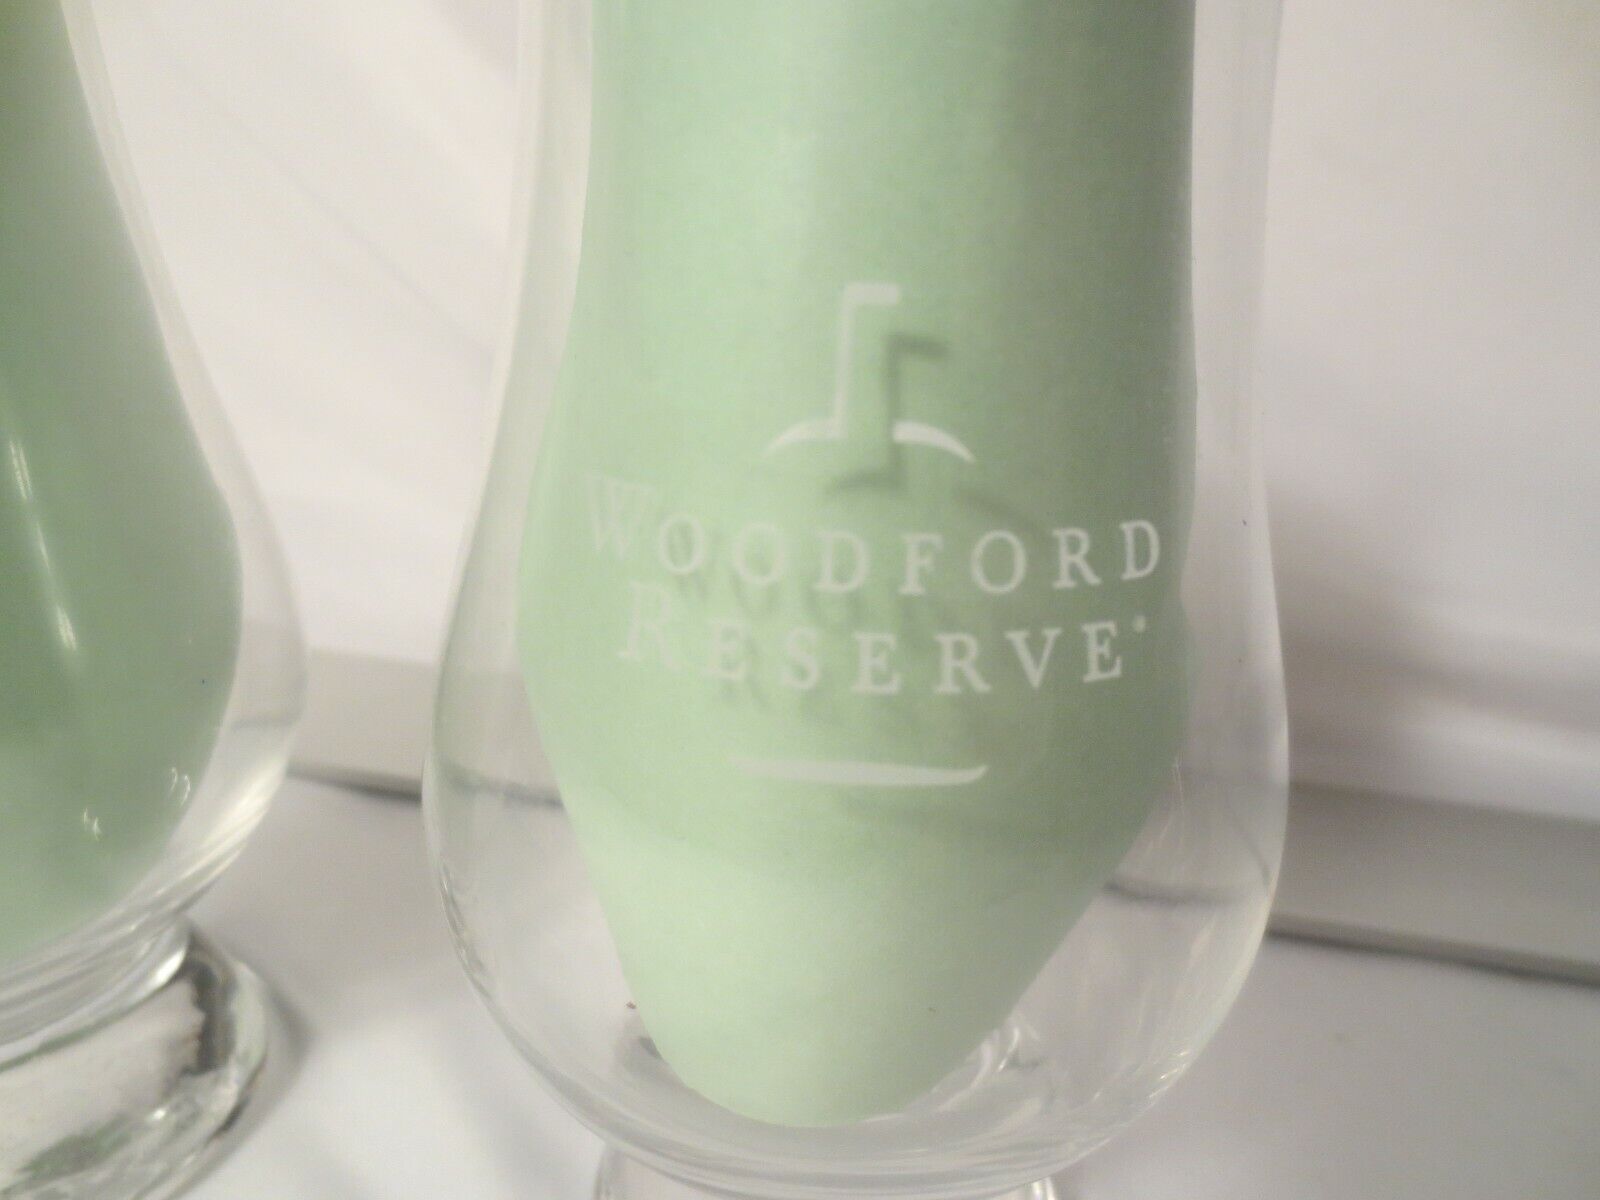 Woodford Reserve Bourbon Whiskey Glencairn Nosing Tasting Glass